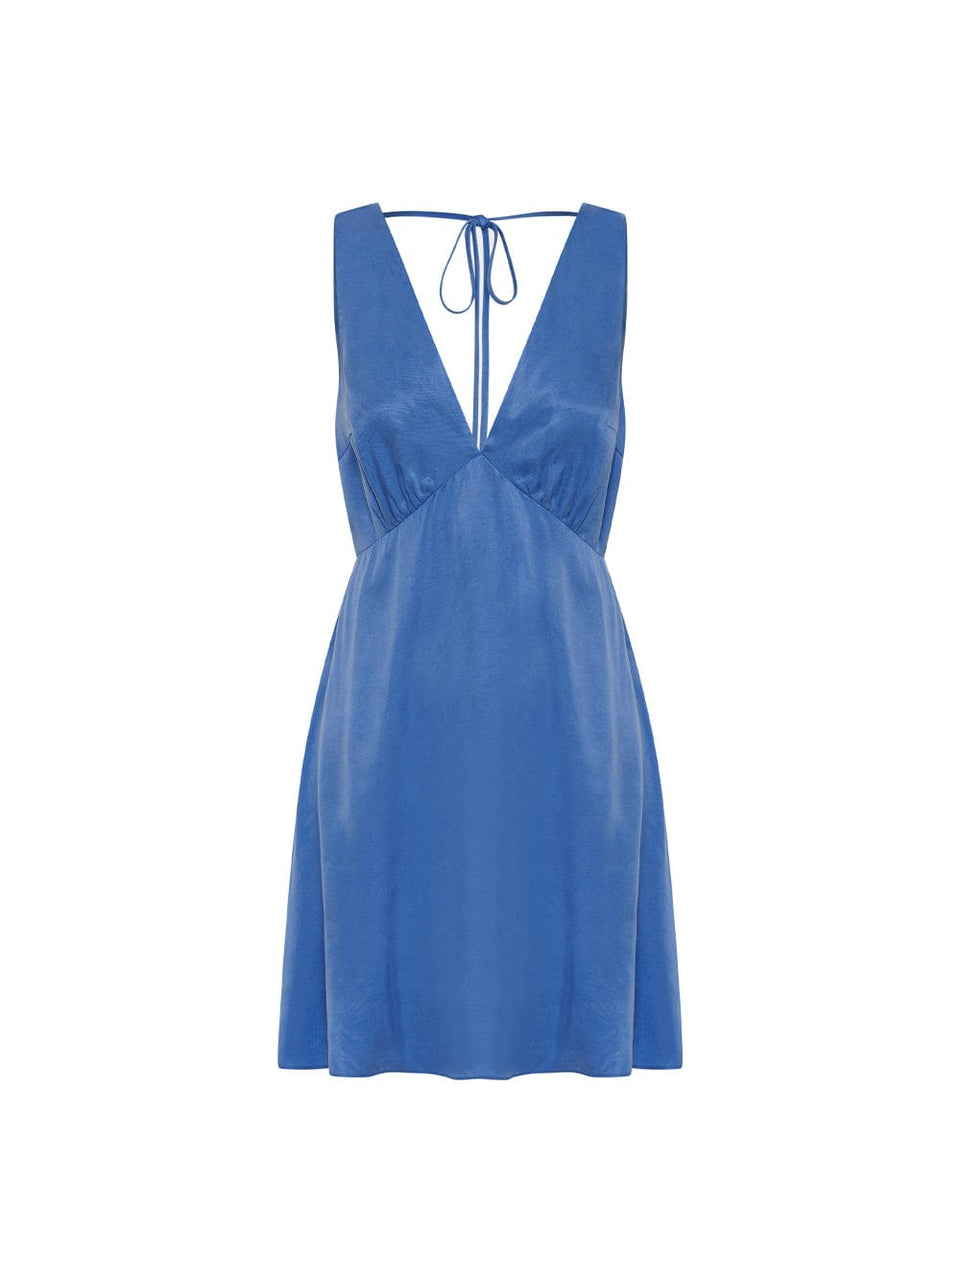 Raya Mini Dress KIVARI | Blue mini dress